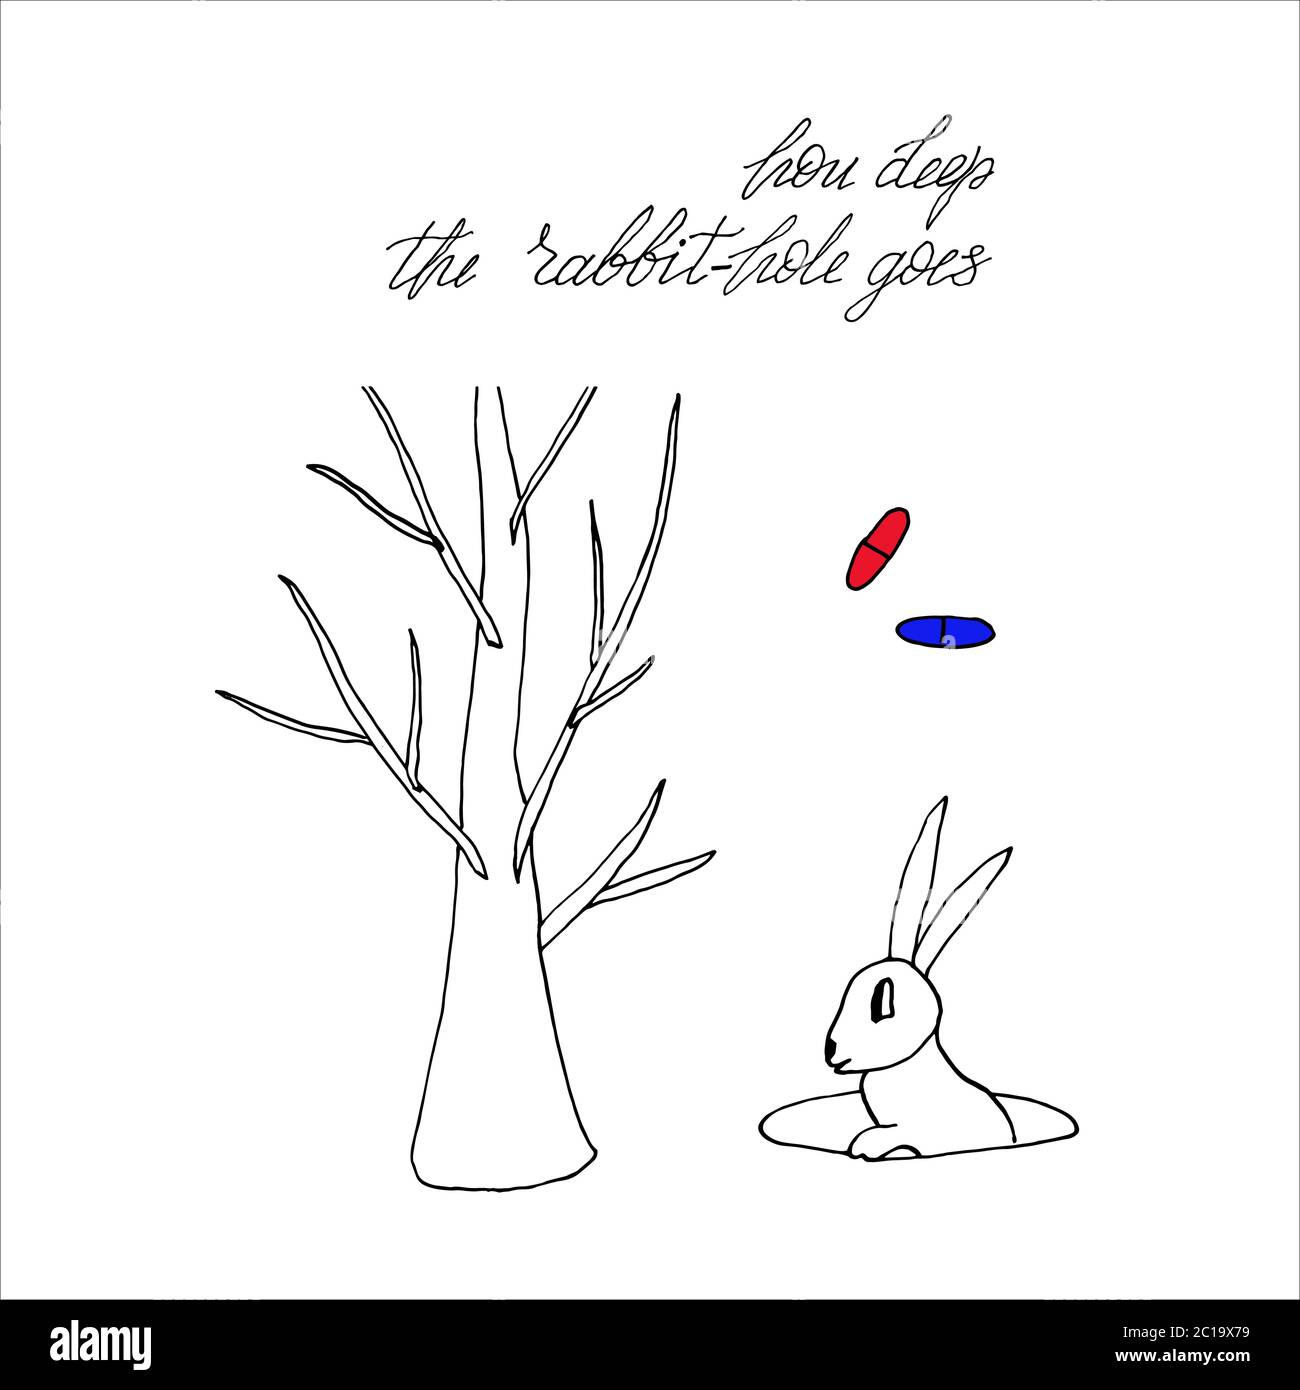 una figura simbolica del coniglio e del buco di coniglio sull'adrenocroma Illustrazione Vettoriale